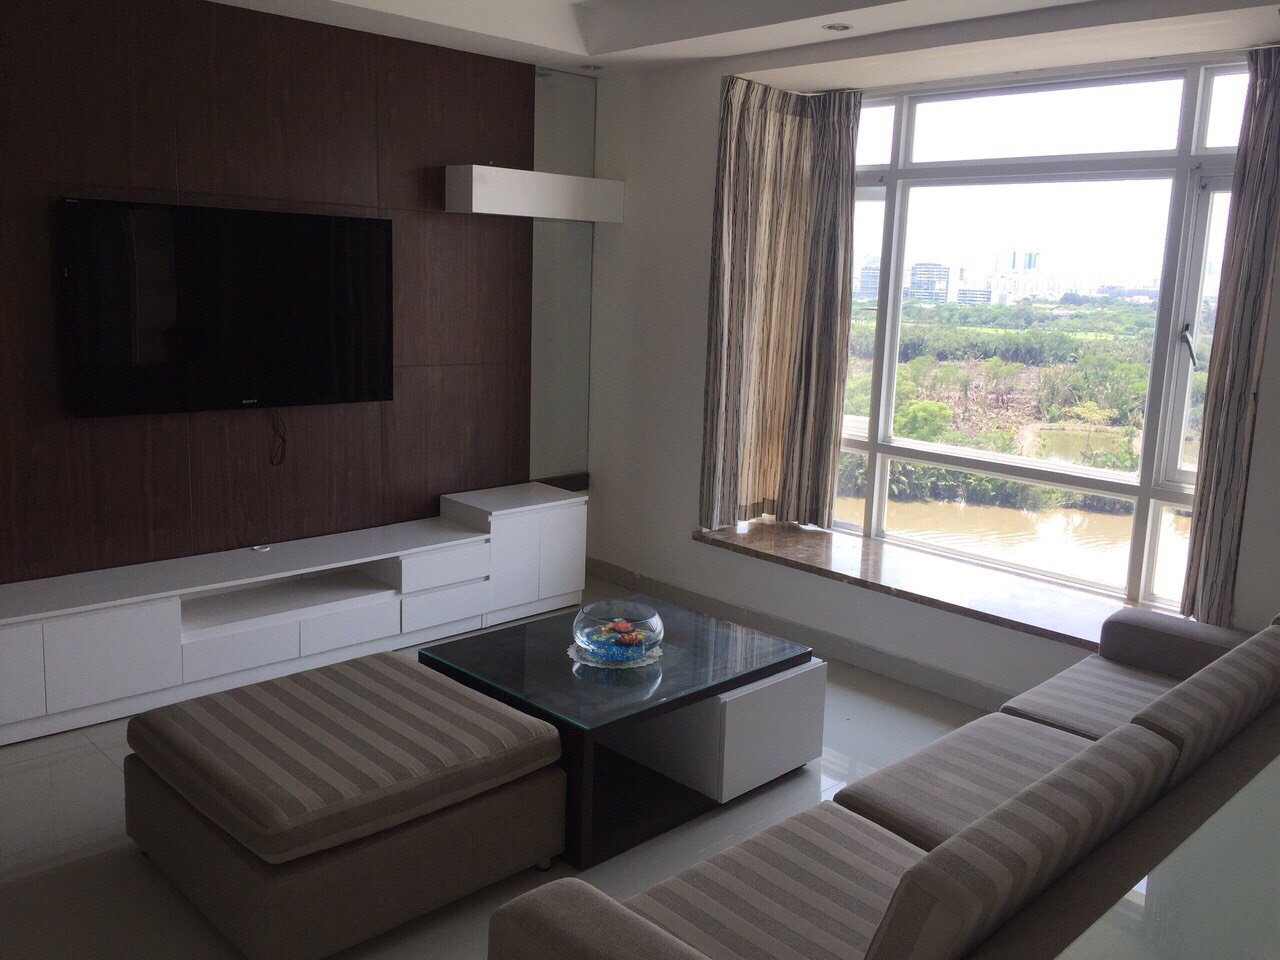 Cho thuê căn hộ Riverside Residence, diện tích 160m2 view sông, nội thất cao cấp 30tr/th.LH 0916.555.439